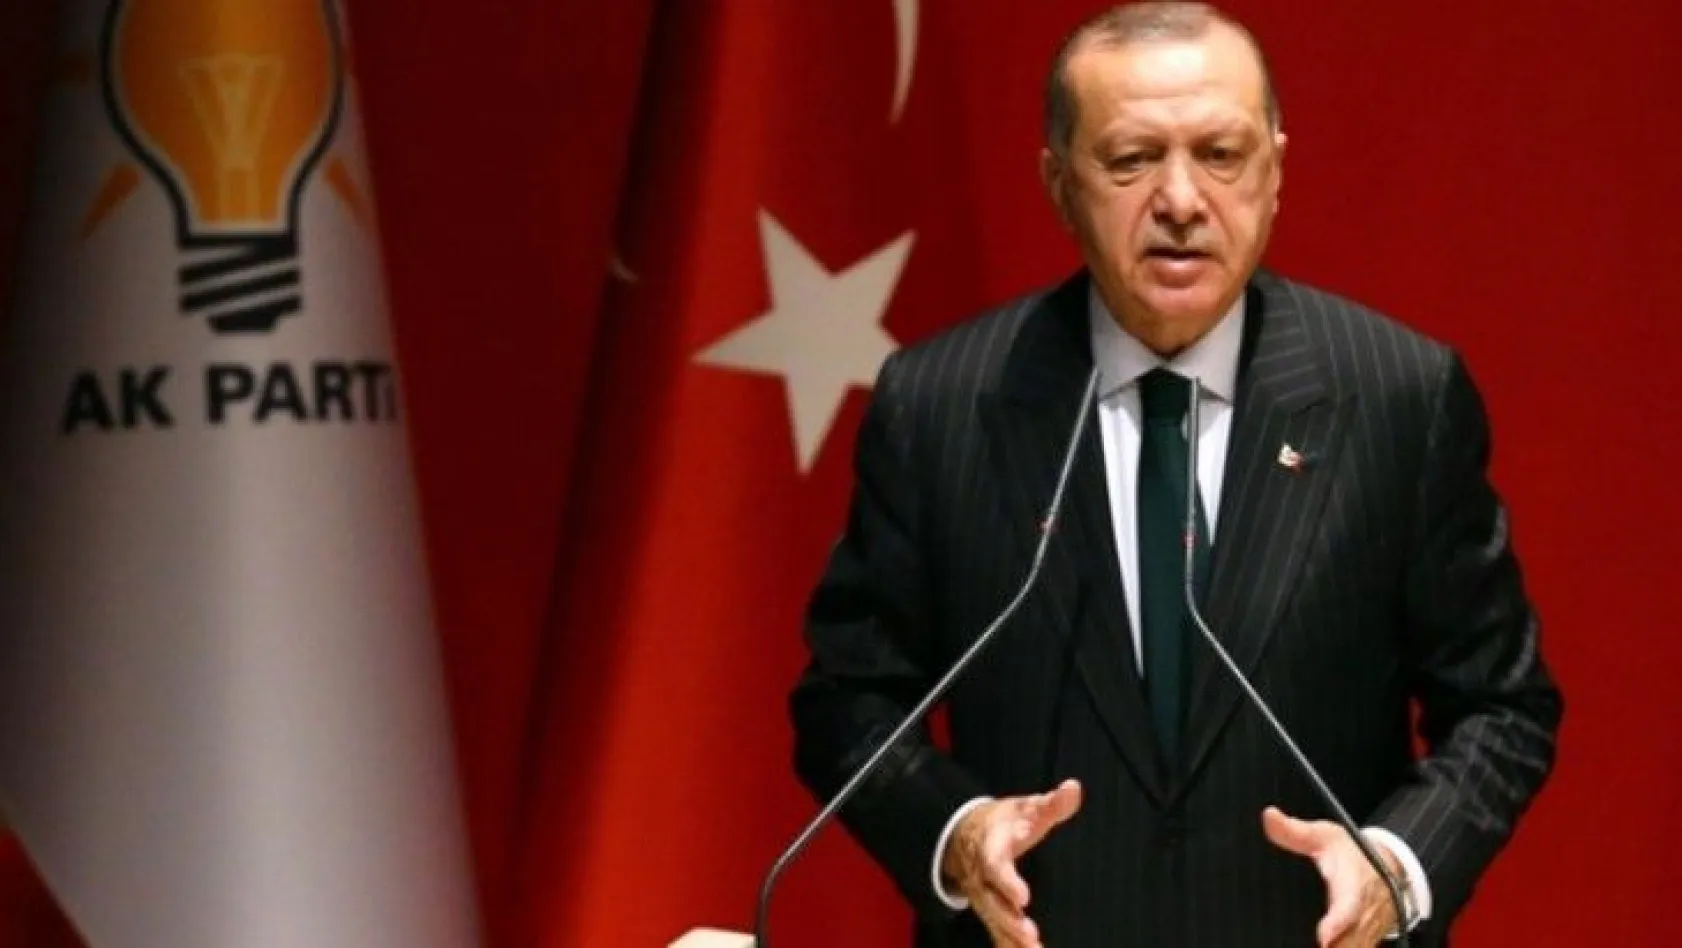 Cumhurbaşkanı Erdoğan, MYK toplantısında Arınç'la görüşmesini anlattı